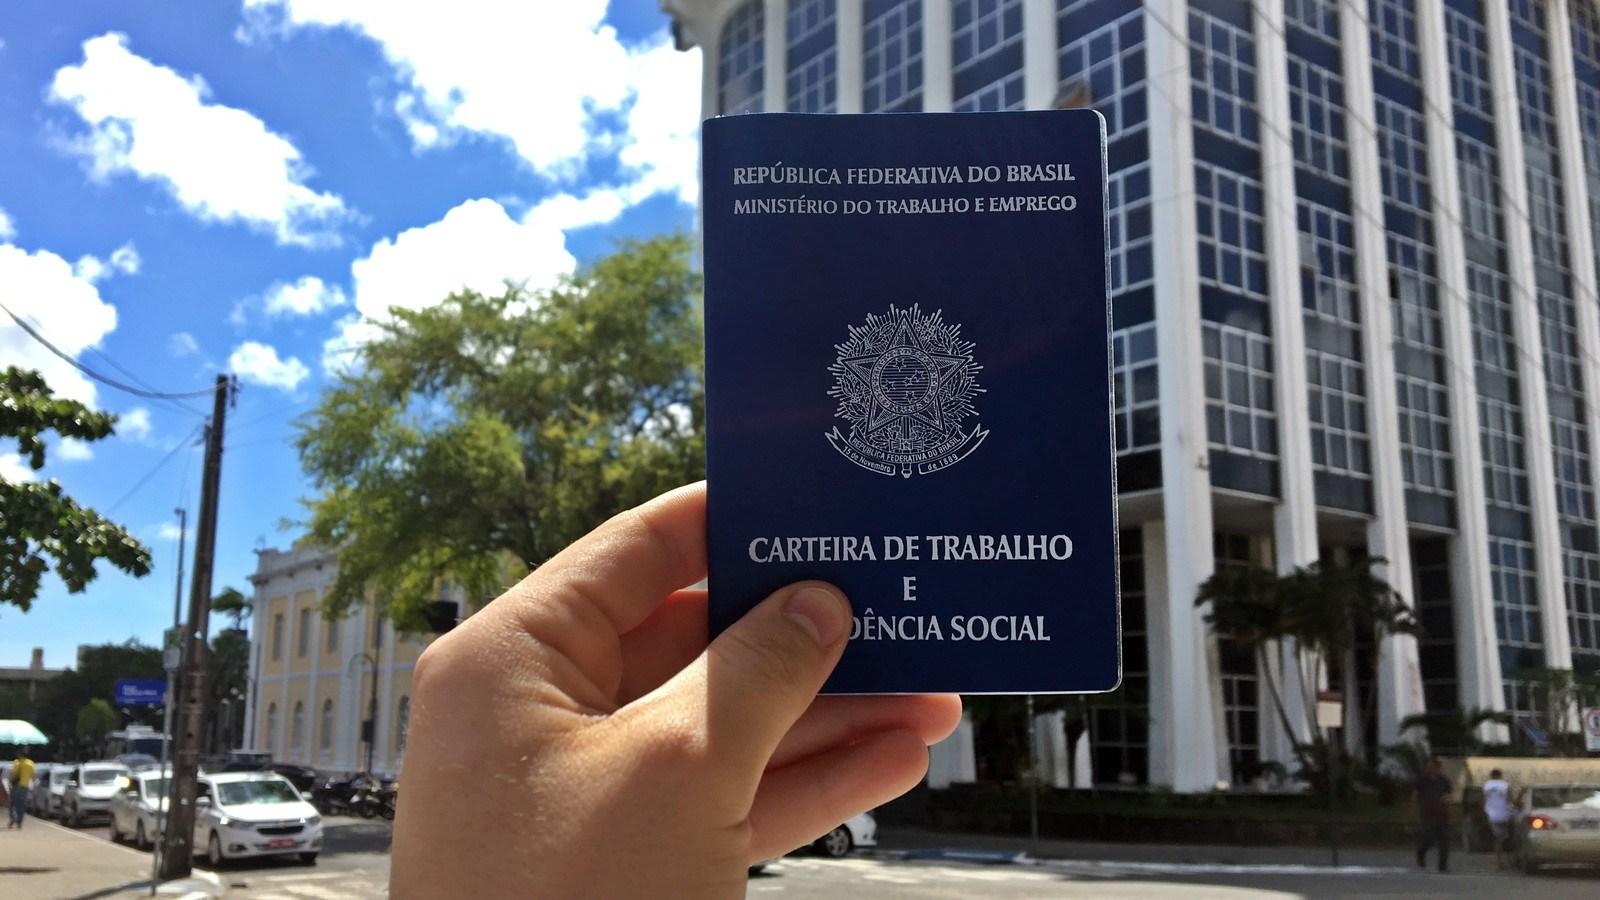 Evento na Superintendência Regional do Trabalho na Bahia marca os 88 anos de existência do Ministério do Trabalho